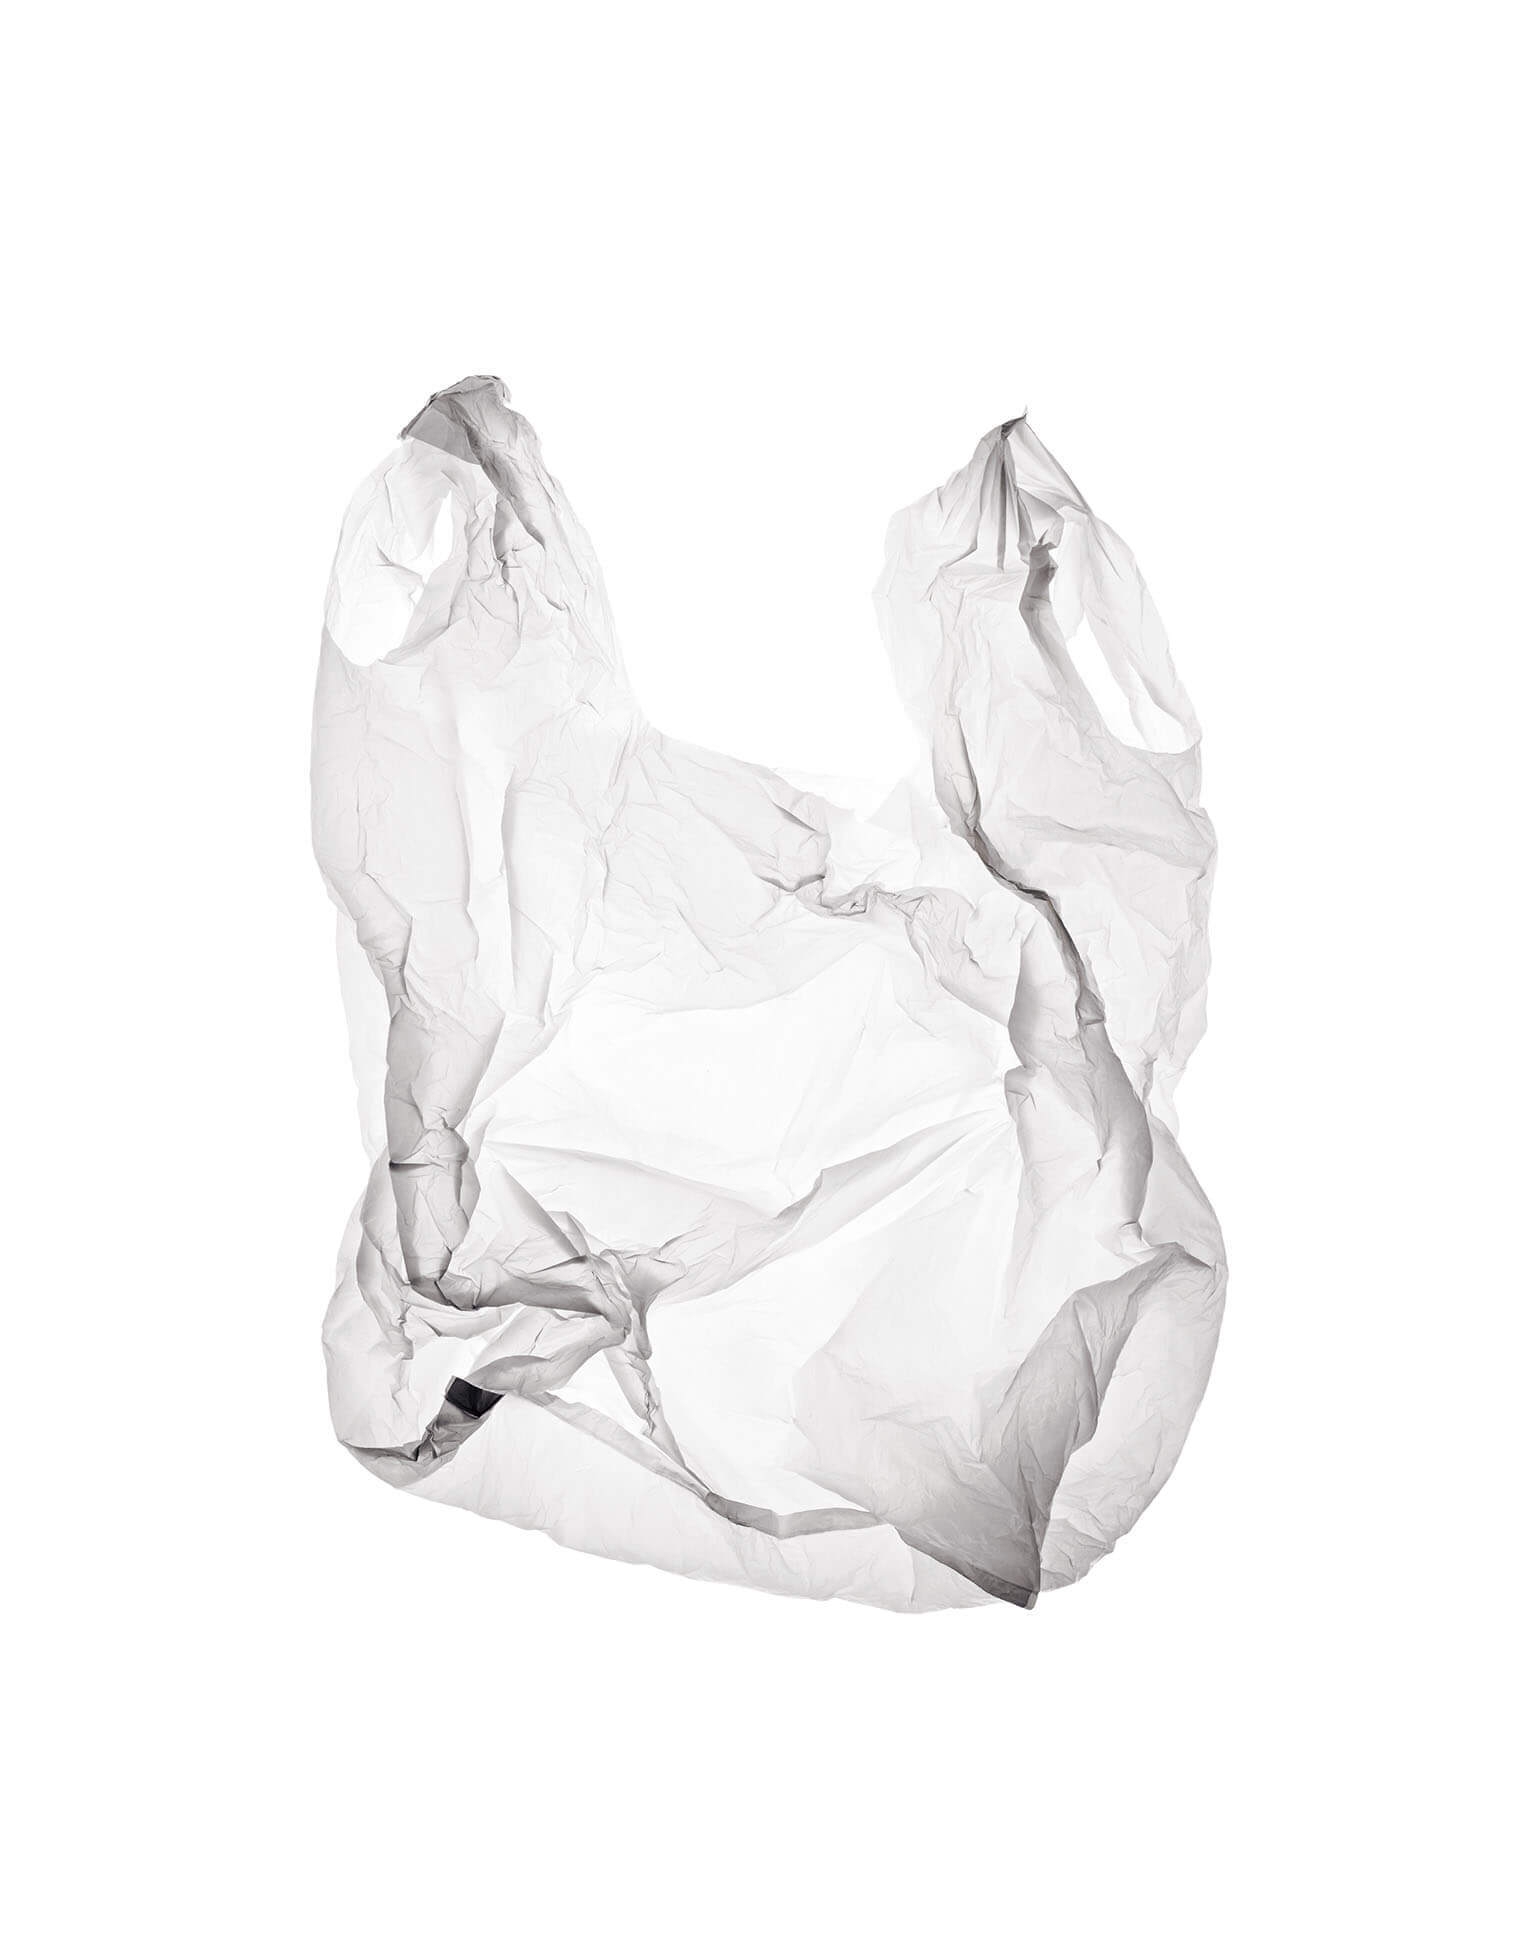 一個塑膠袋的「工作壽命」只有短短15分鐘。STEVE GALLAGHER